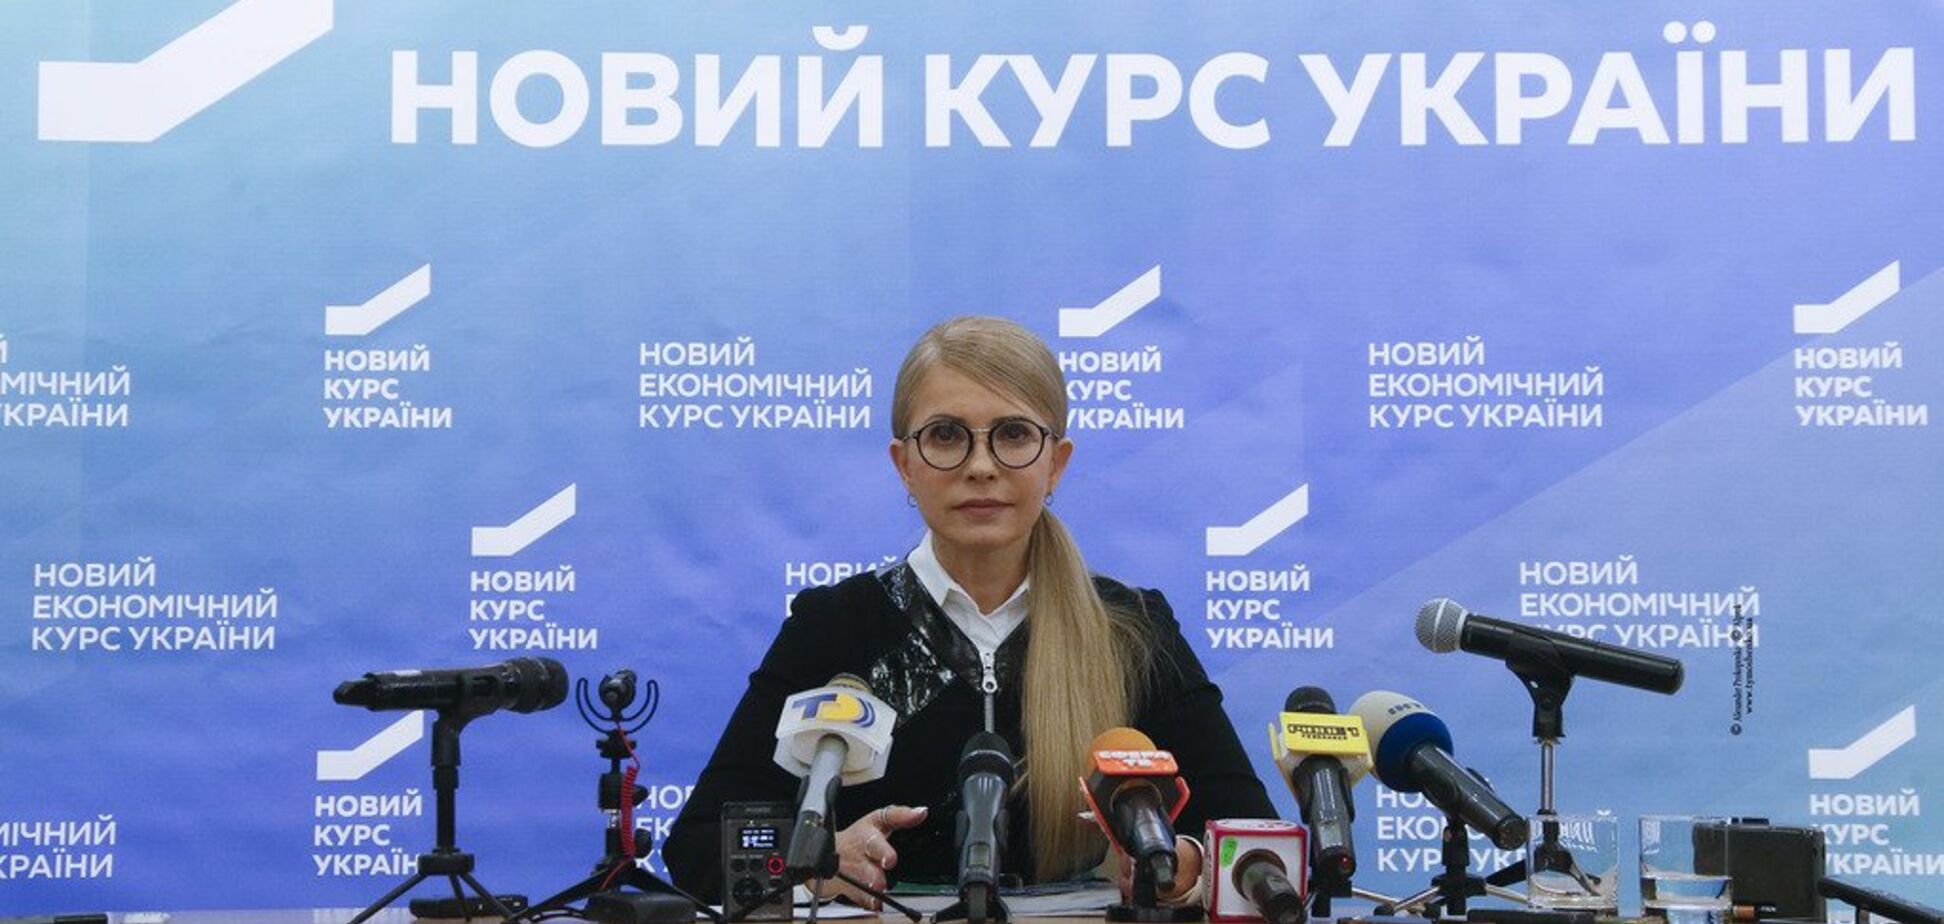 Мораторий на вырубку лесов надо вводить немедленно — Тимошенко